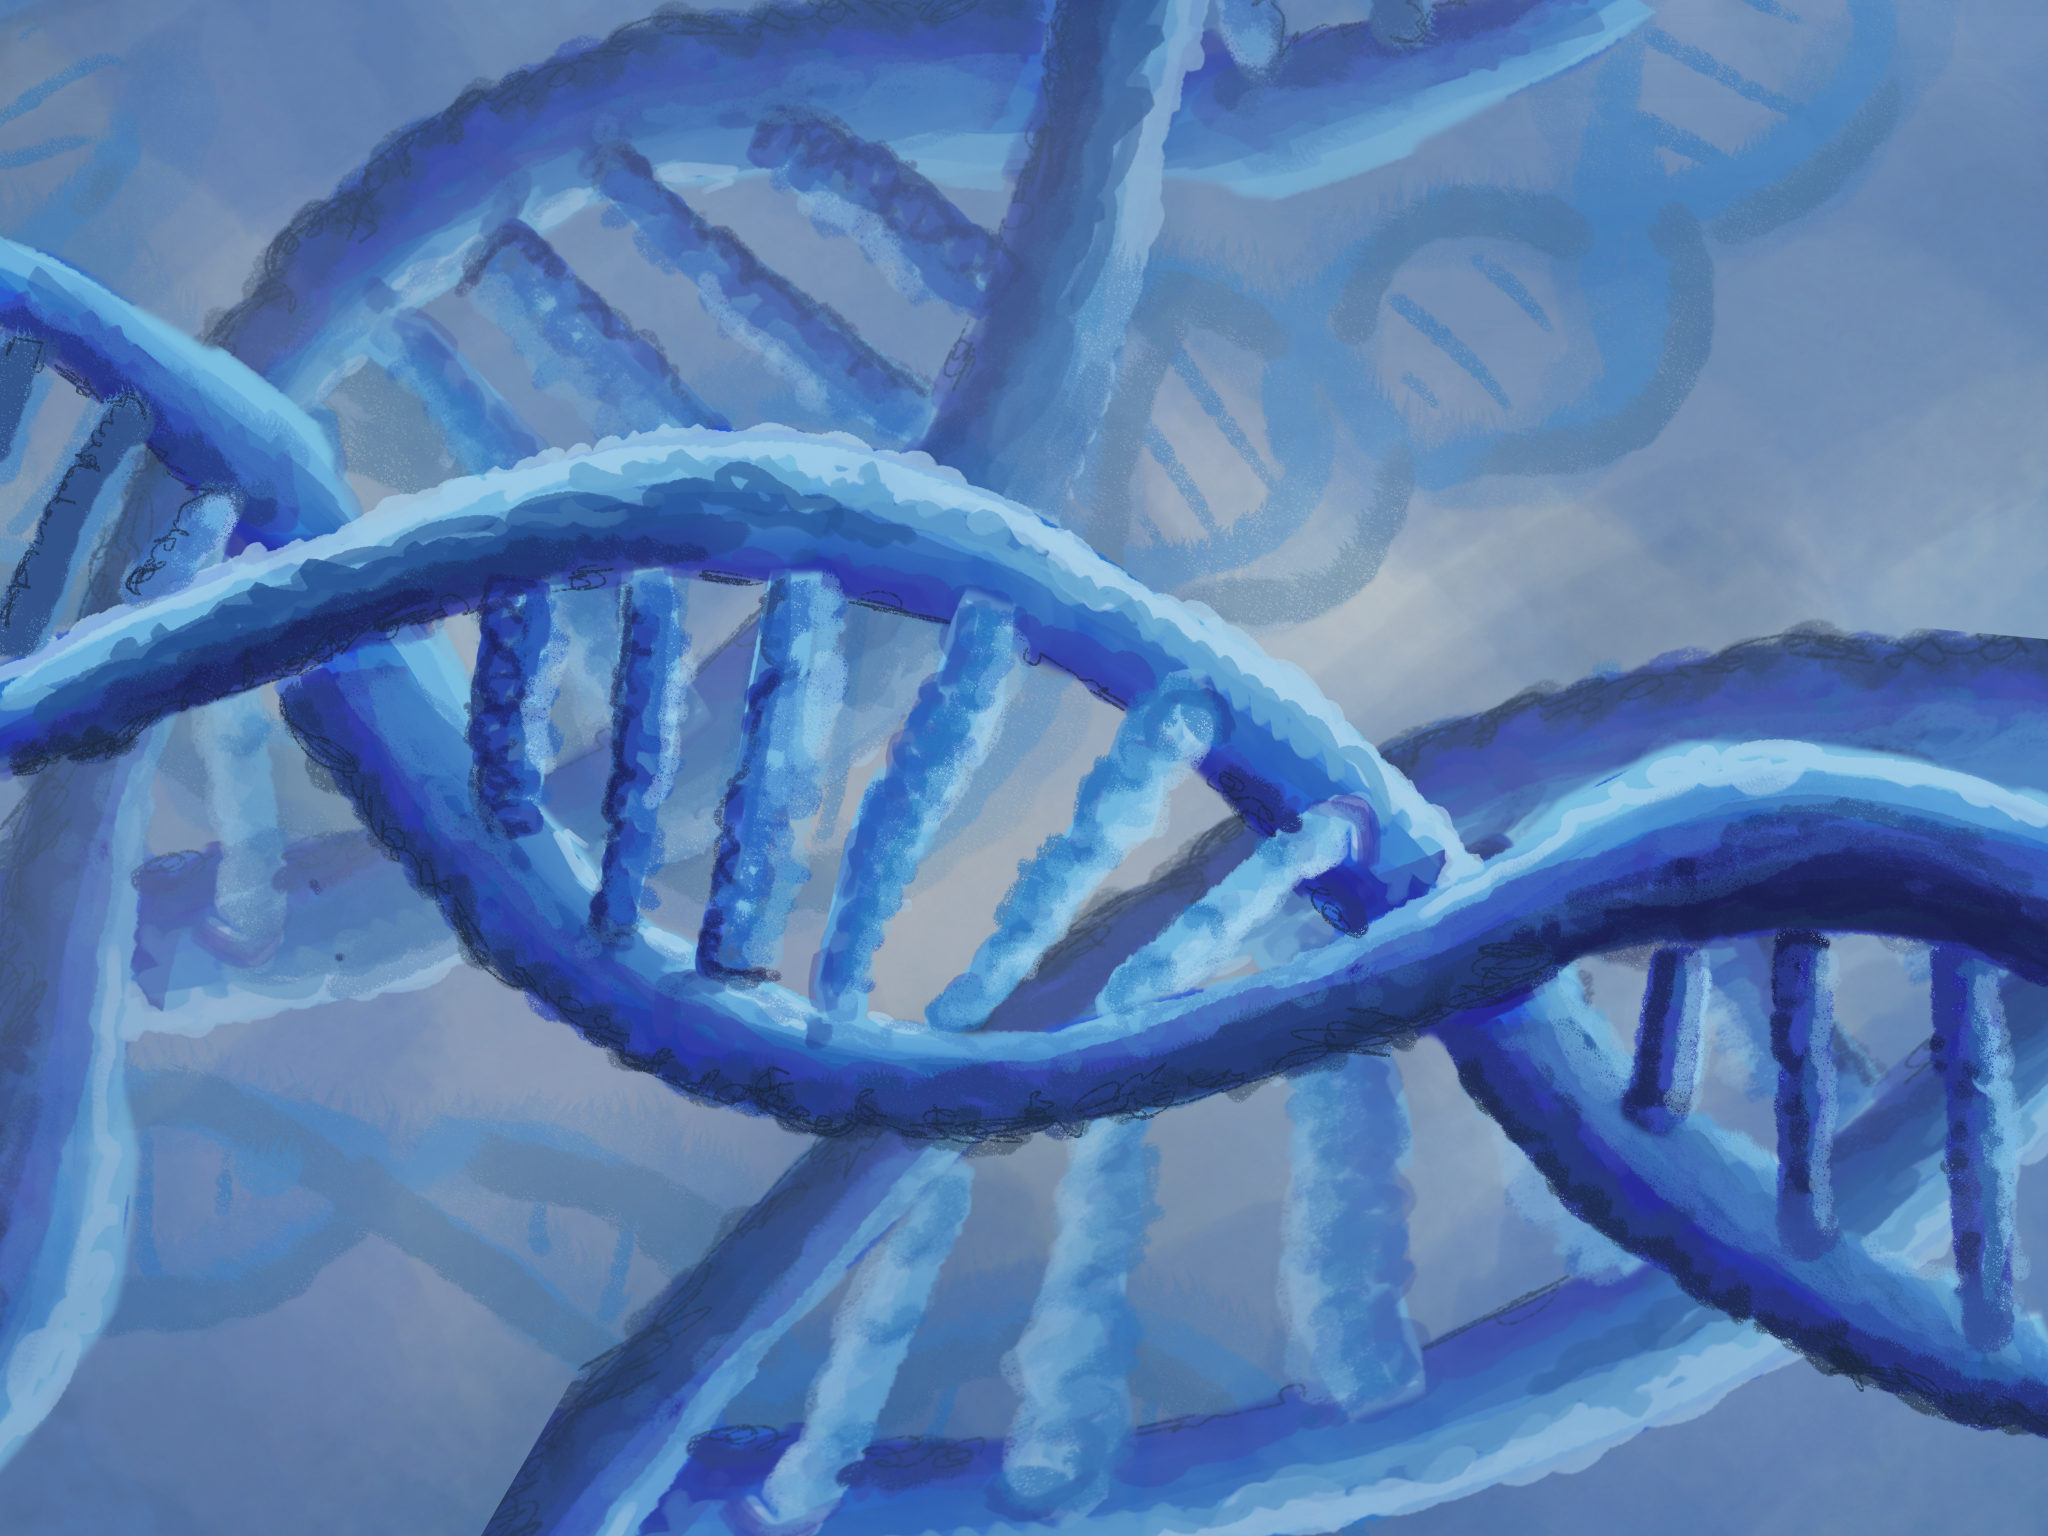 blue DNA strands